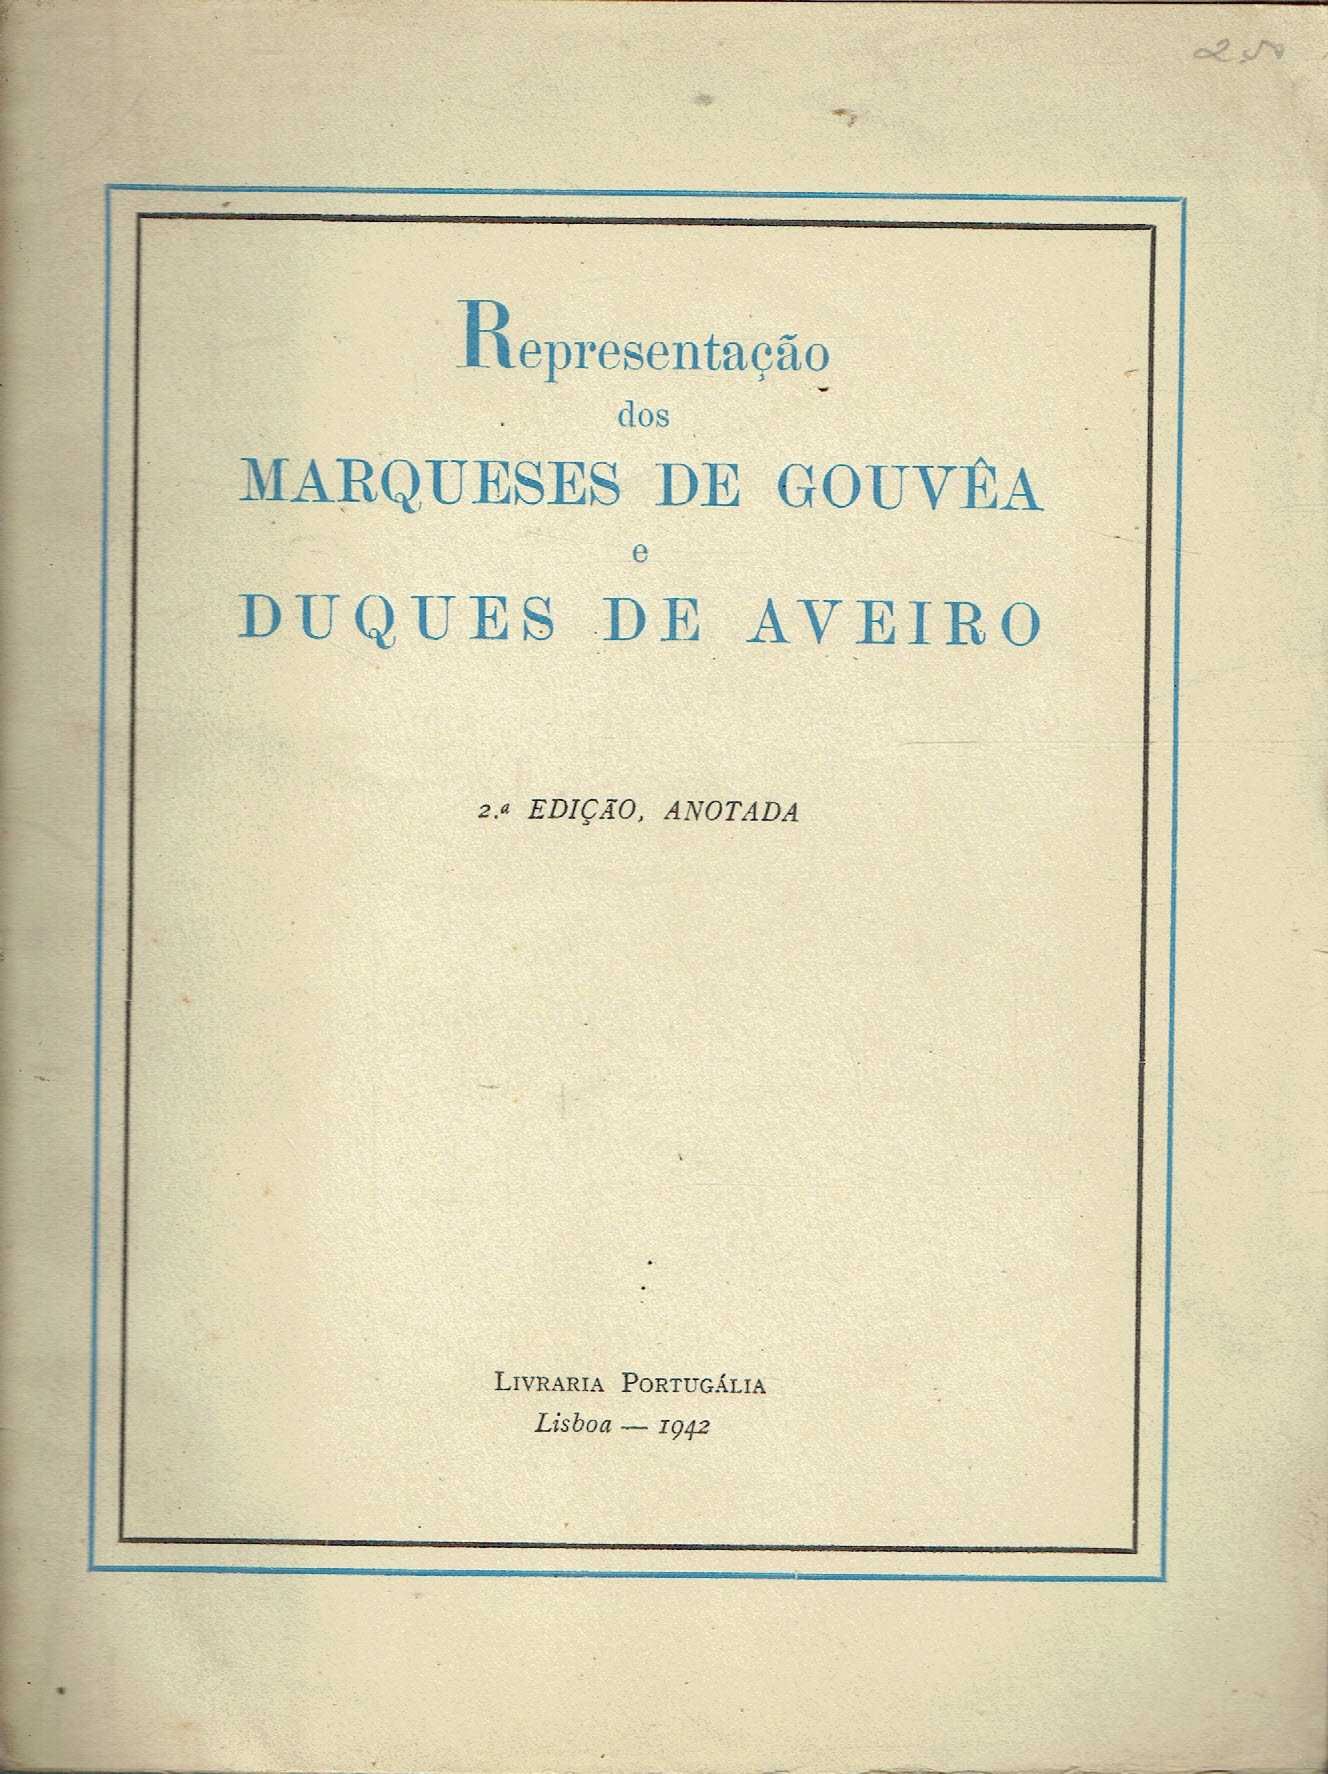 7396
	
Representação dos Marqueses de Gouveia e Duques de Aveiro